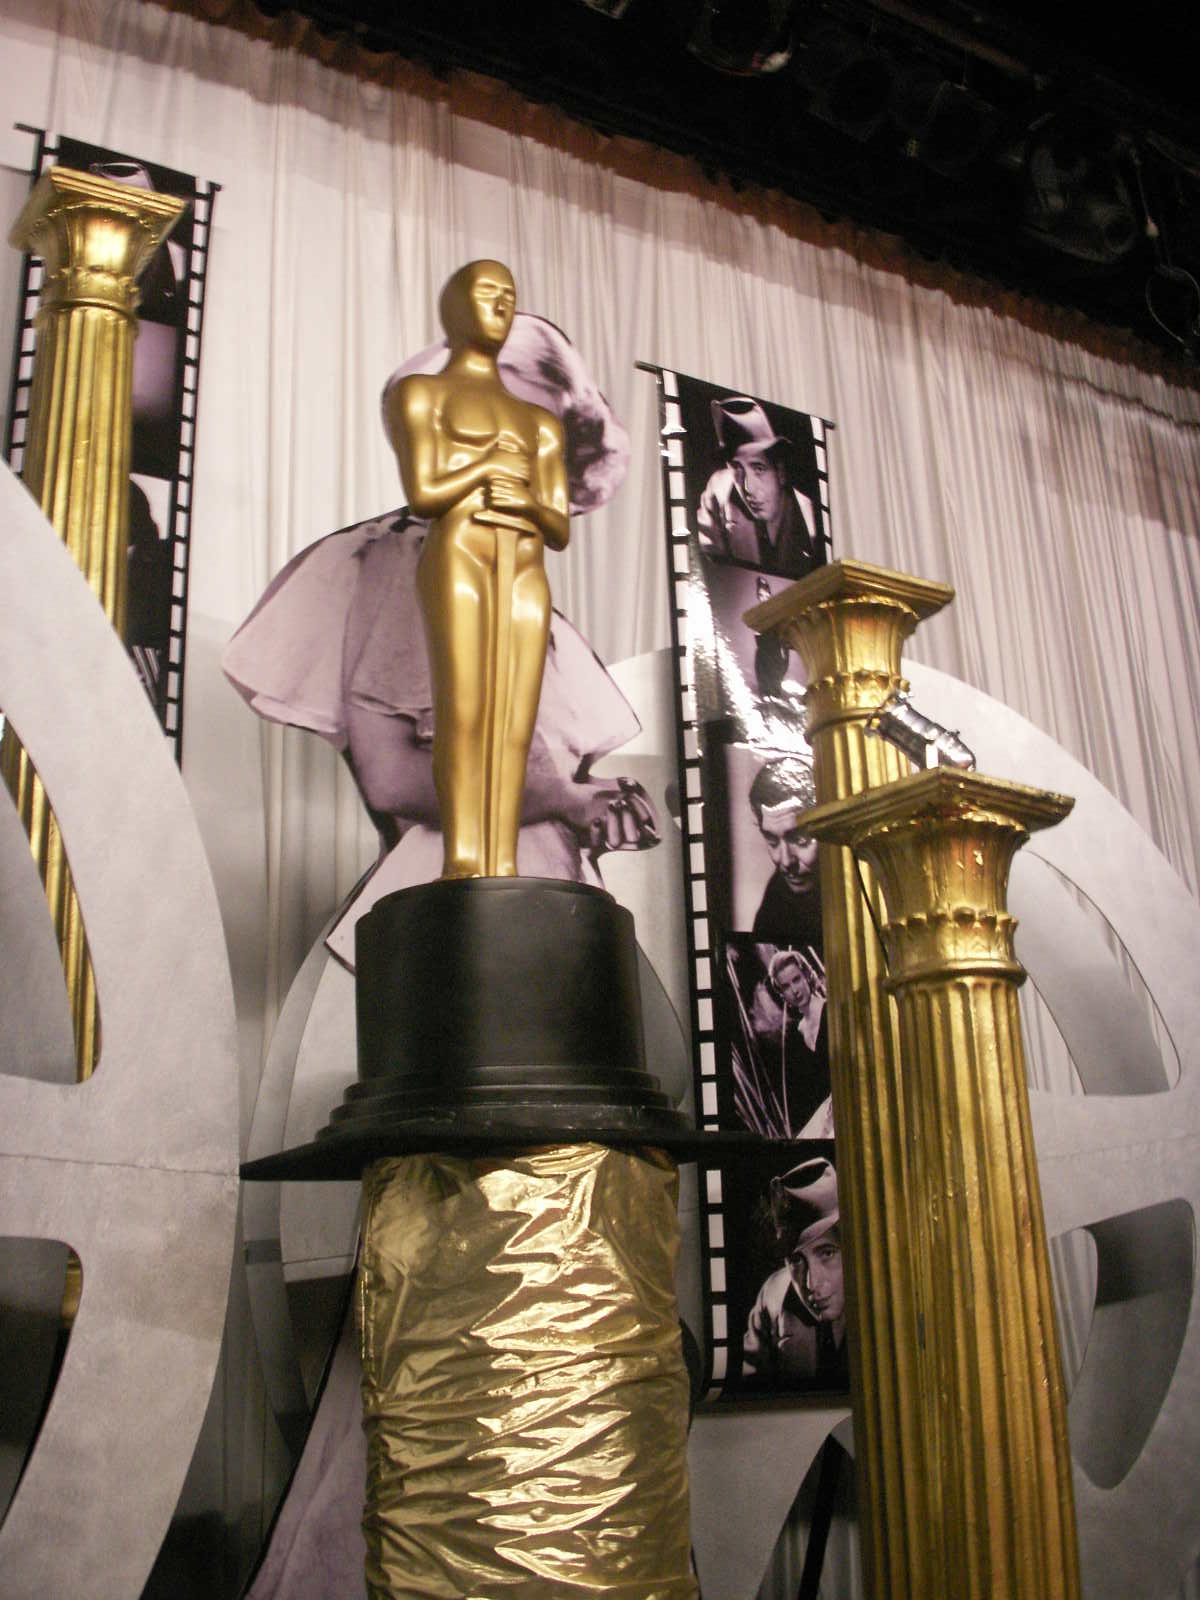 Hollywood/Oscars